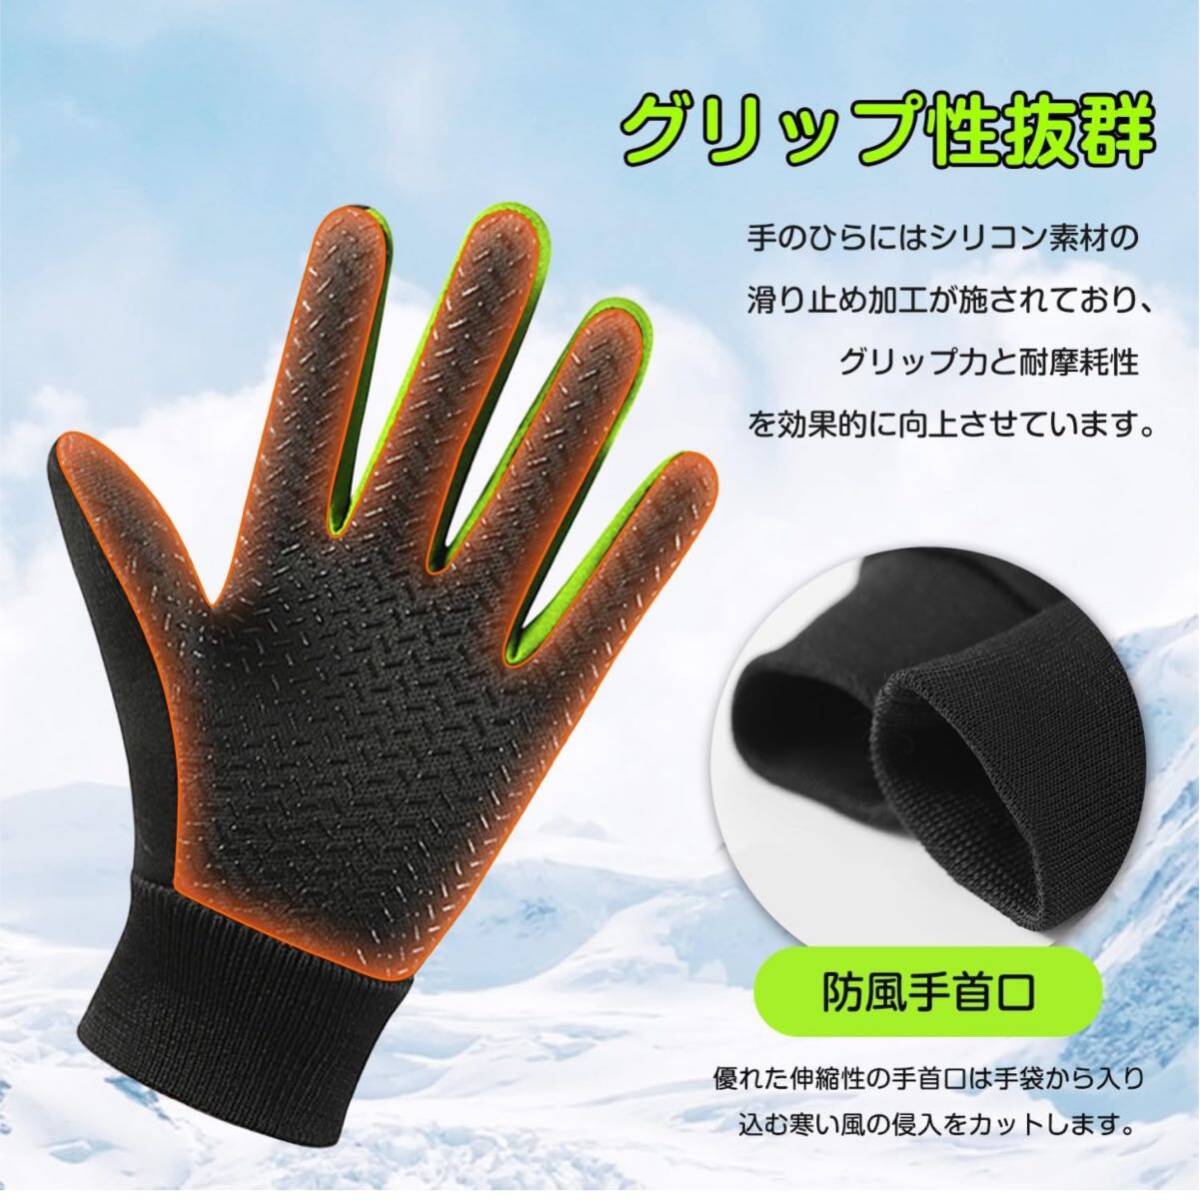 [ вскрыть только ]Gokamoi* защищающий от холода перчатка детский защищающий от холода перчатки Kids [ обратная сторона ворсистый * водоотталкивающая отделка * предотвращение скольжения * выдерживающий износ .] футбол перчатки Junior . способ теплоизоляция 